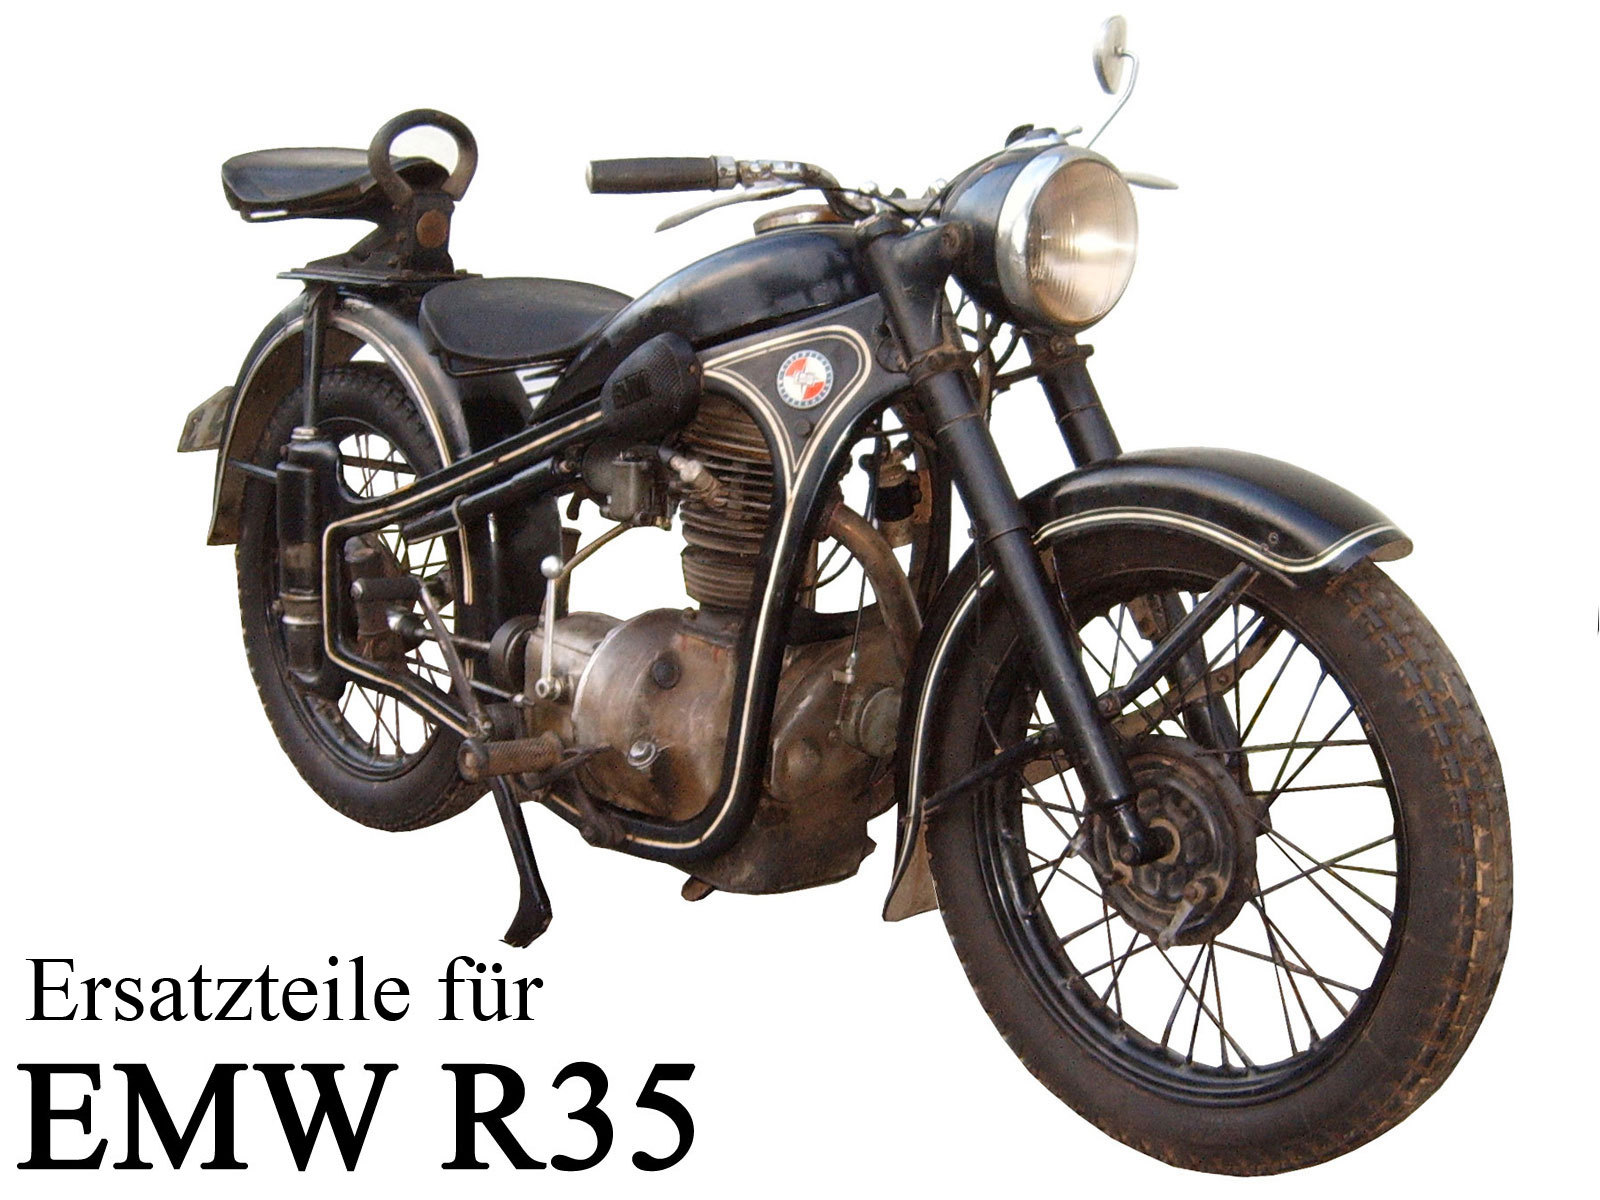 Ersatzteile kaufen für das DDR-Motorrad EMW R 35/3